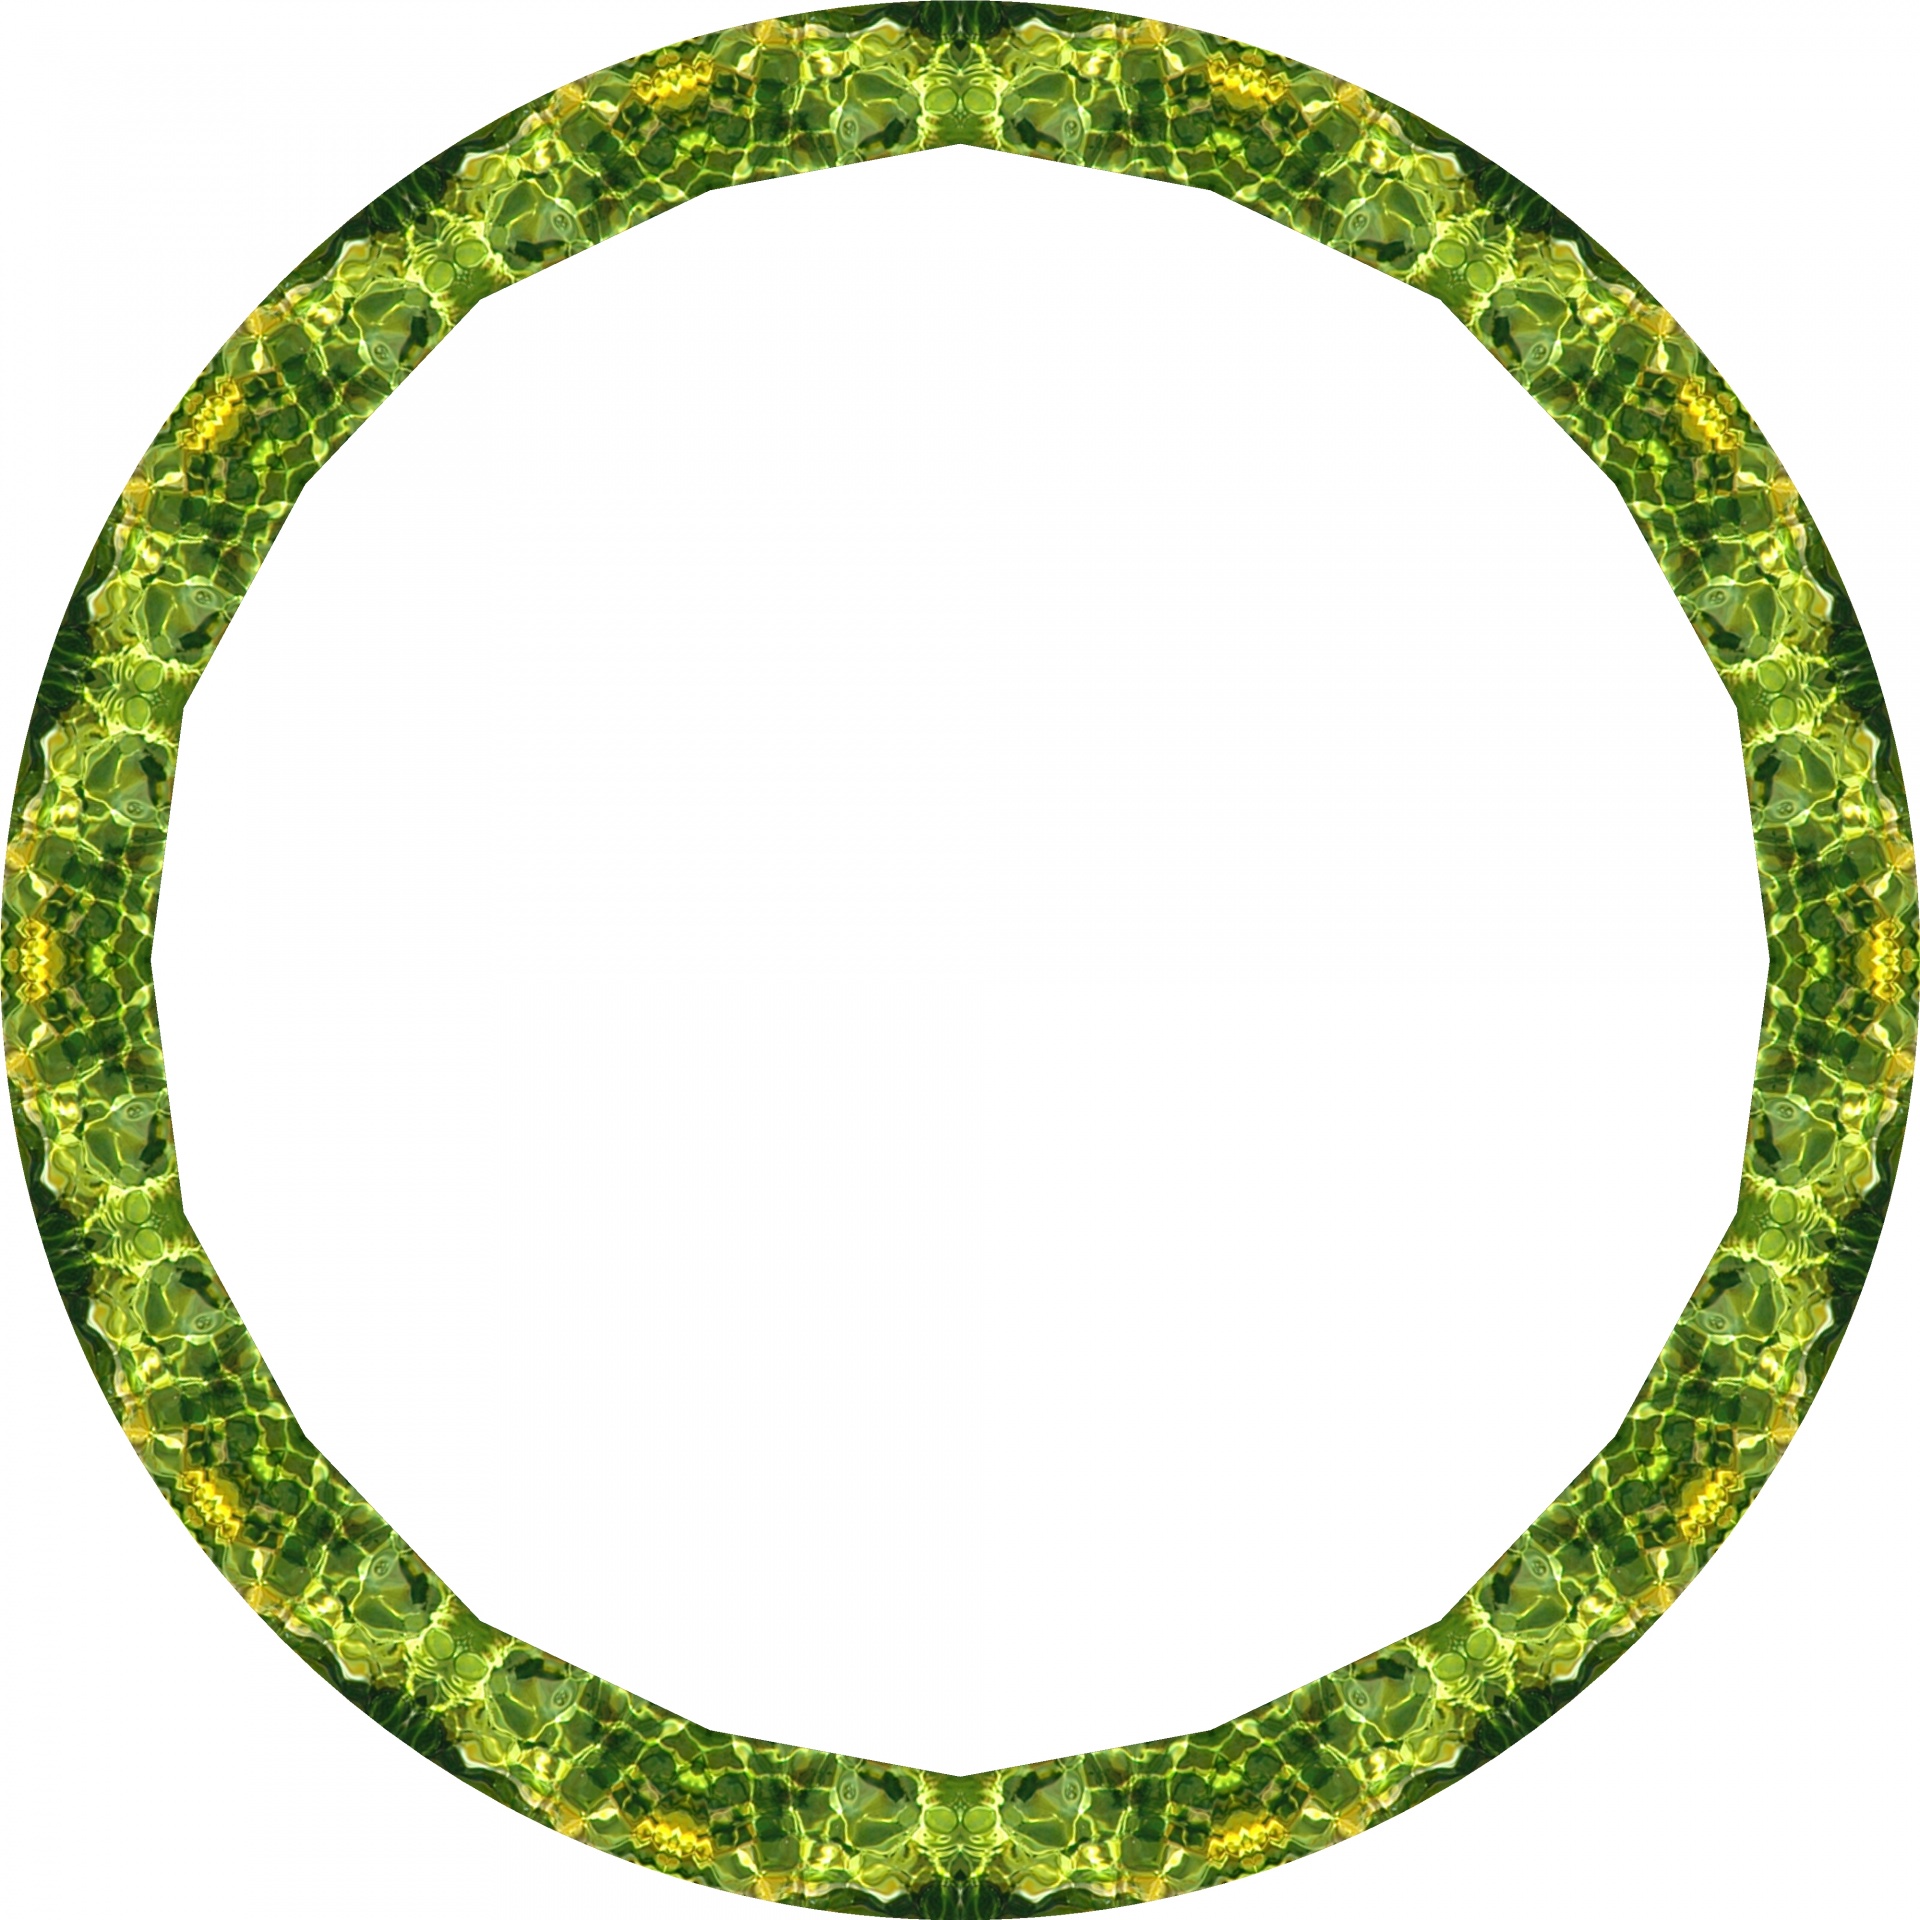 green circle frame free photo